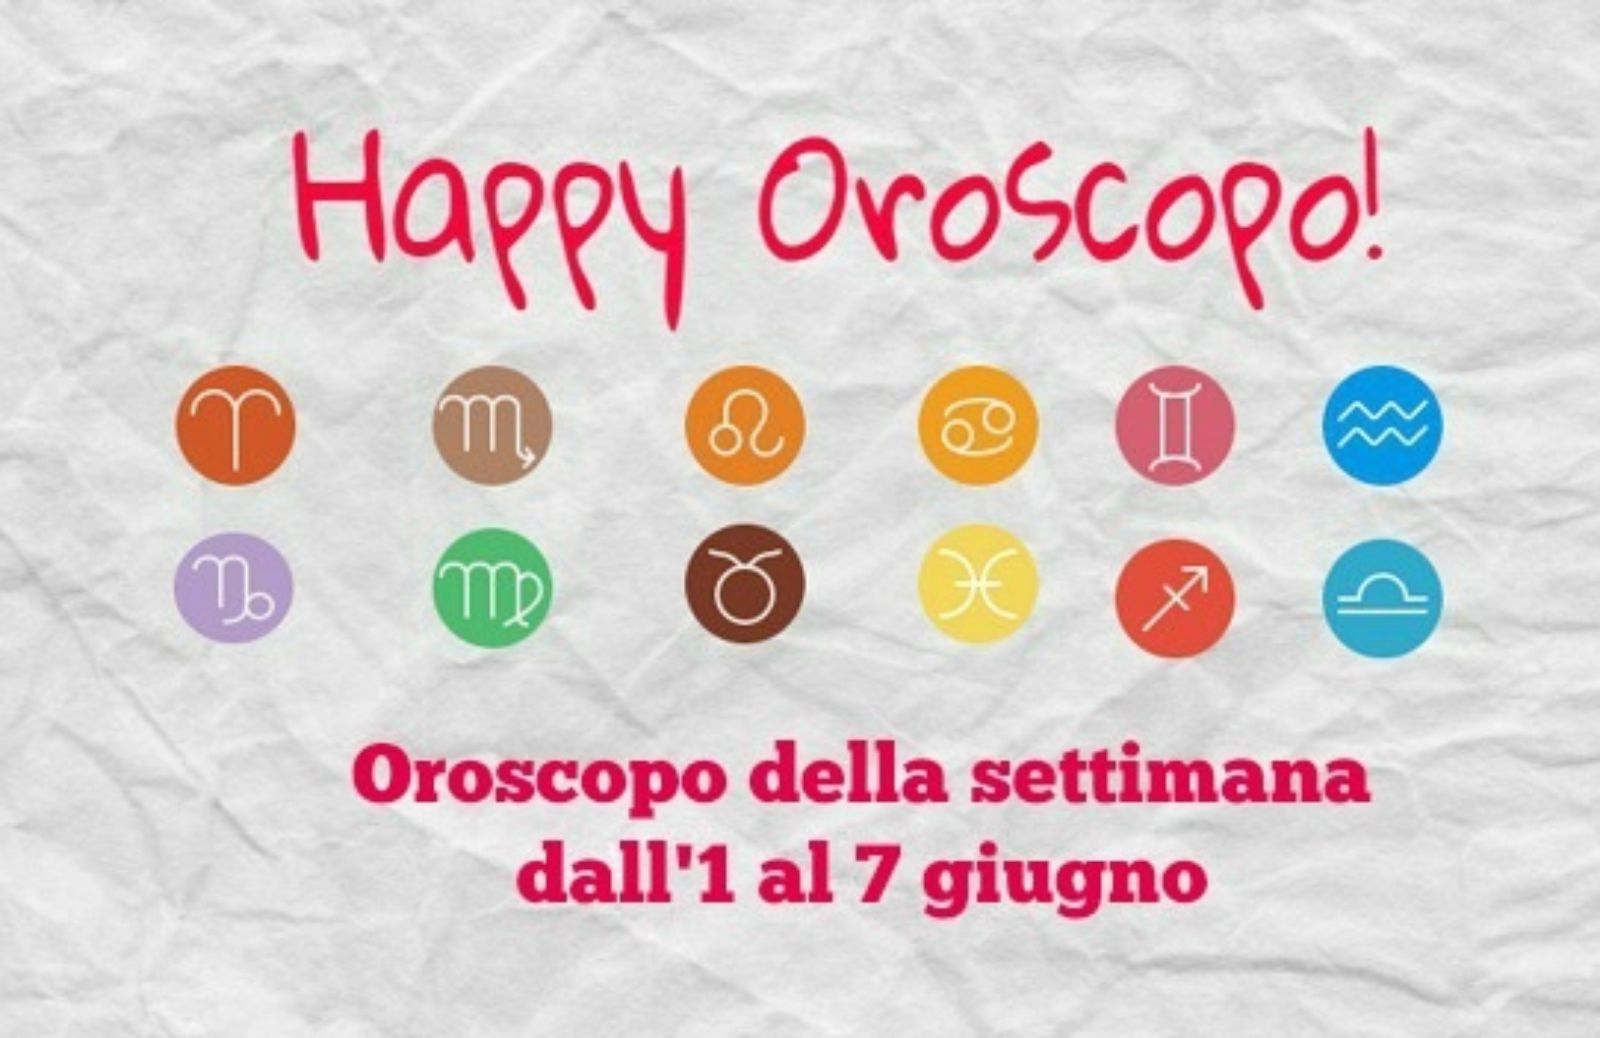 Happy Oroscopo della settimana: cosa dicono le stelle dall'1 al 7 giugno